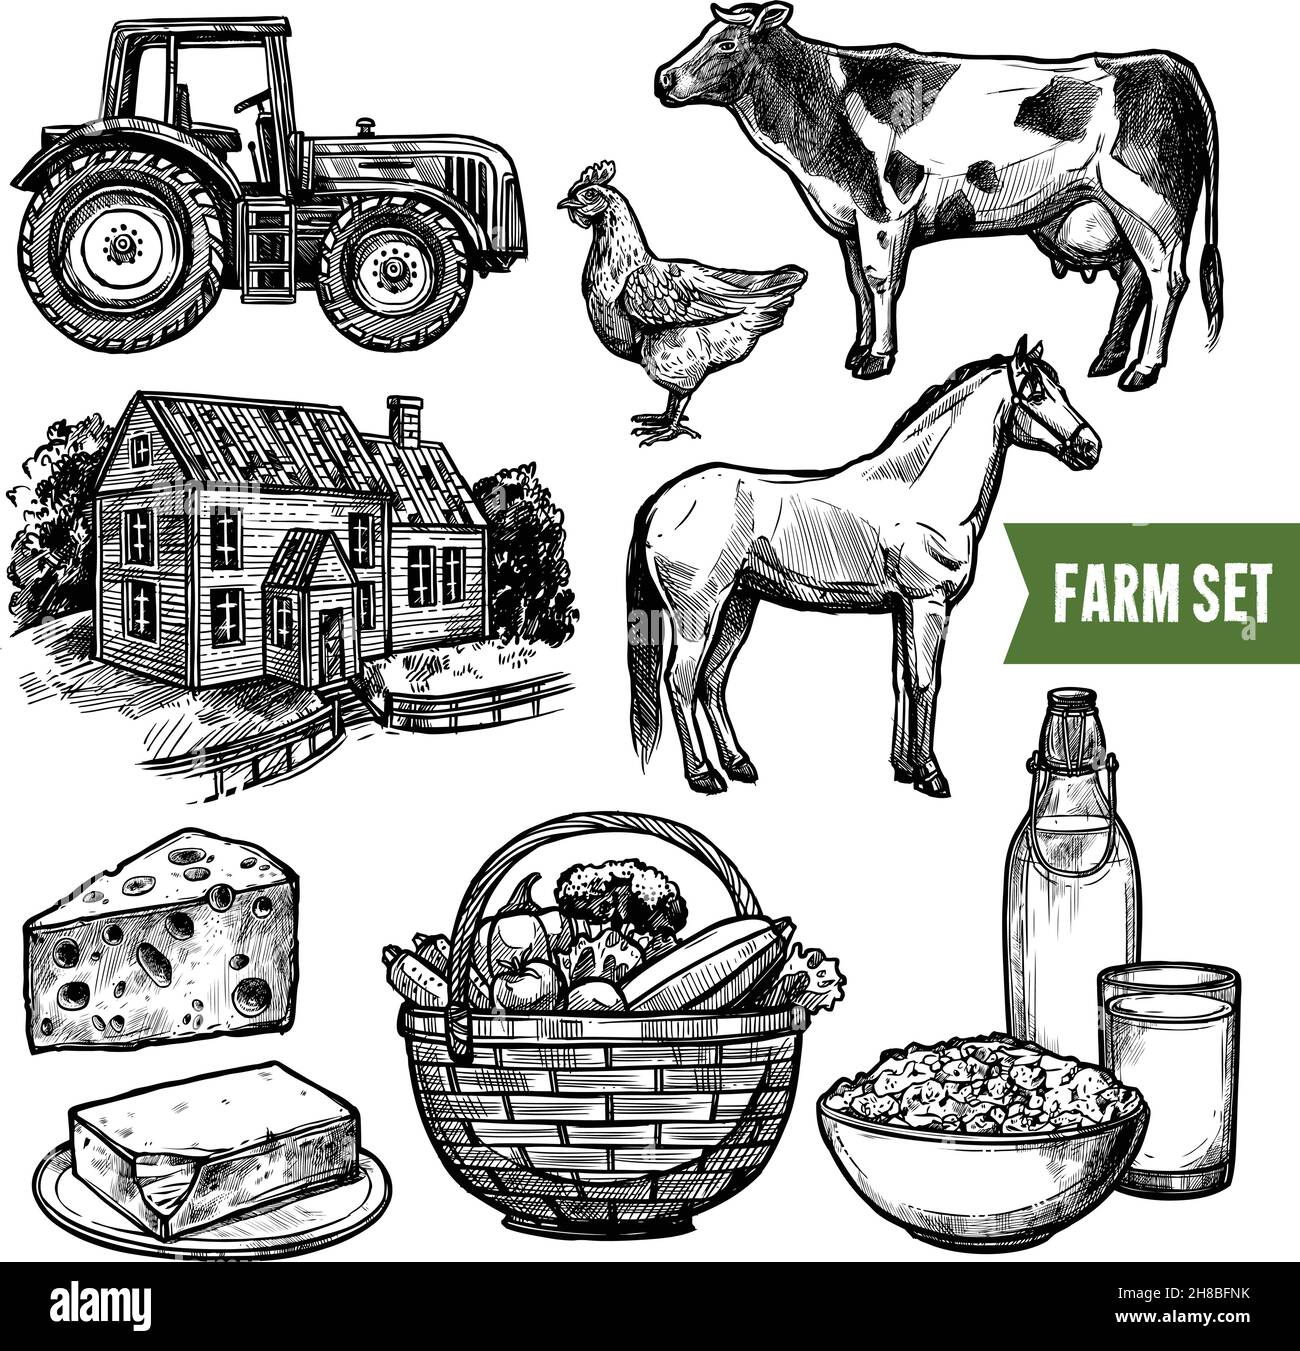 Ensemble de ferme biologique noir et blanc avec ferme alimentaire saine tracteur pour animaux et ferme sur fond blanc croquis dessiné à la main vecteur isolé illustrati Illustration de Vecteur